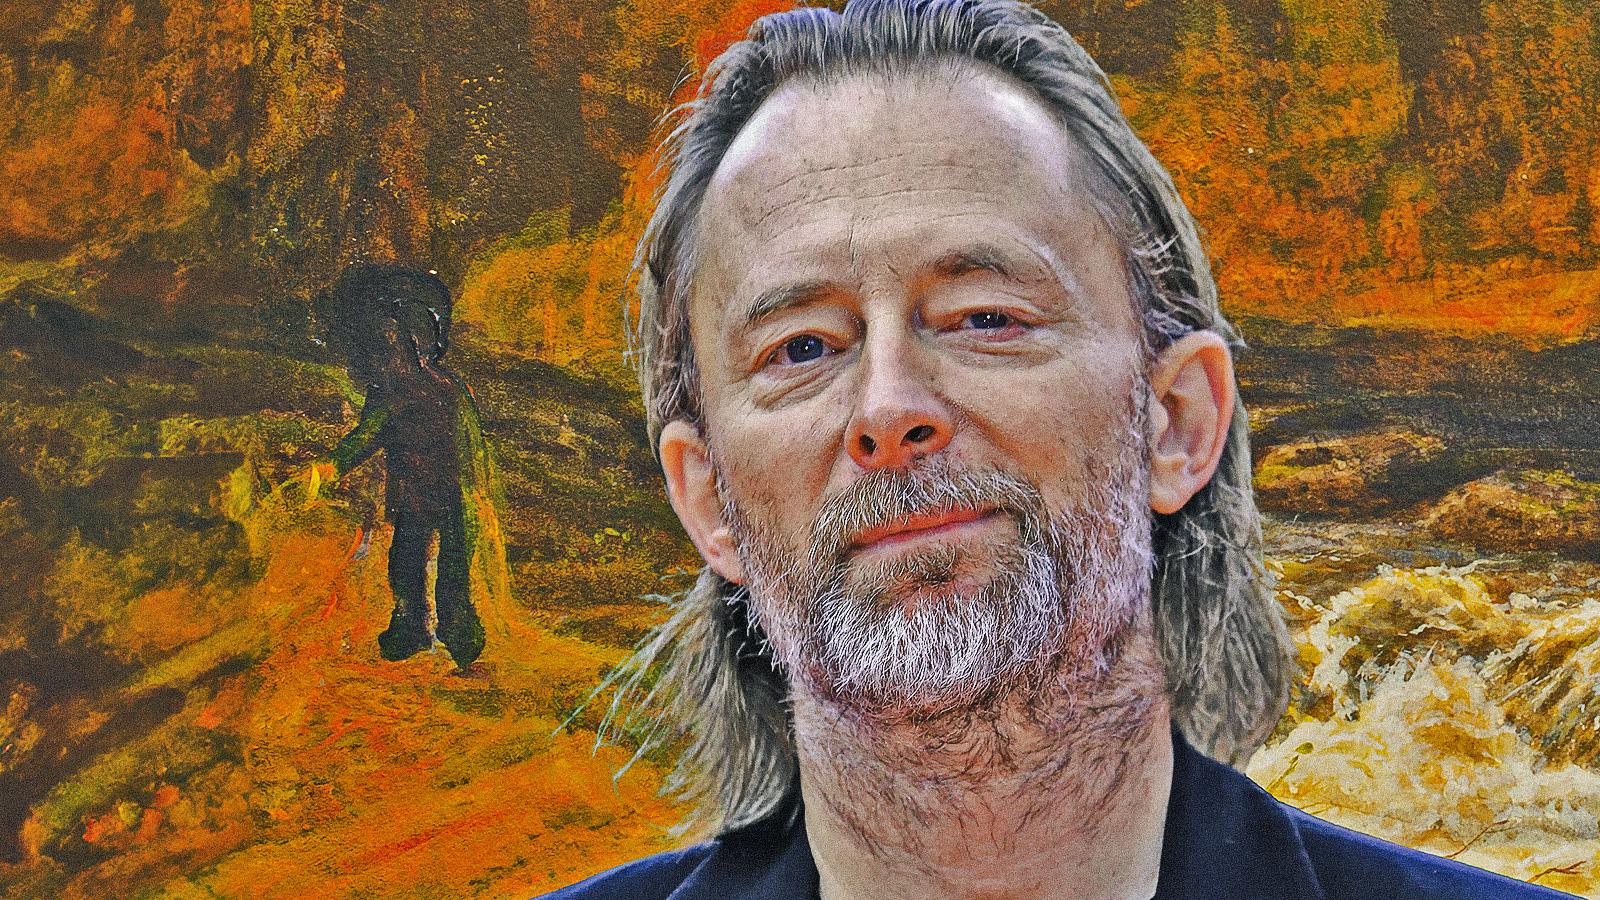 La musica di Confidenza e un altro capolavoro di Thom Yorke